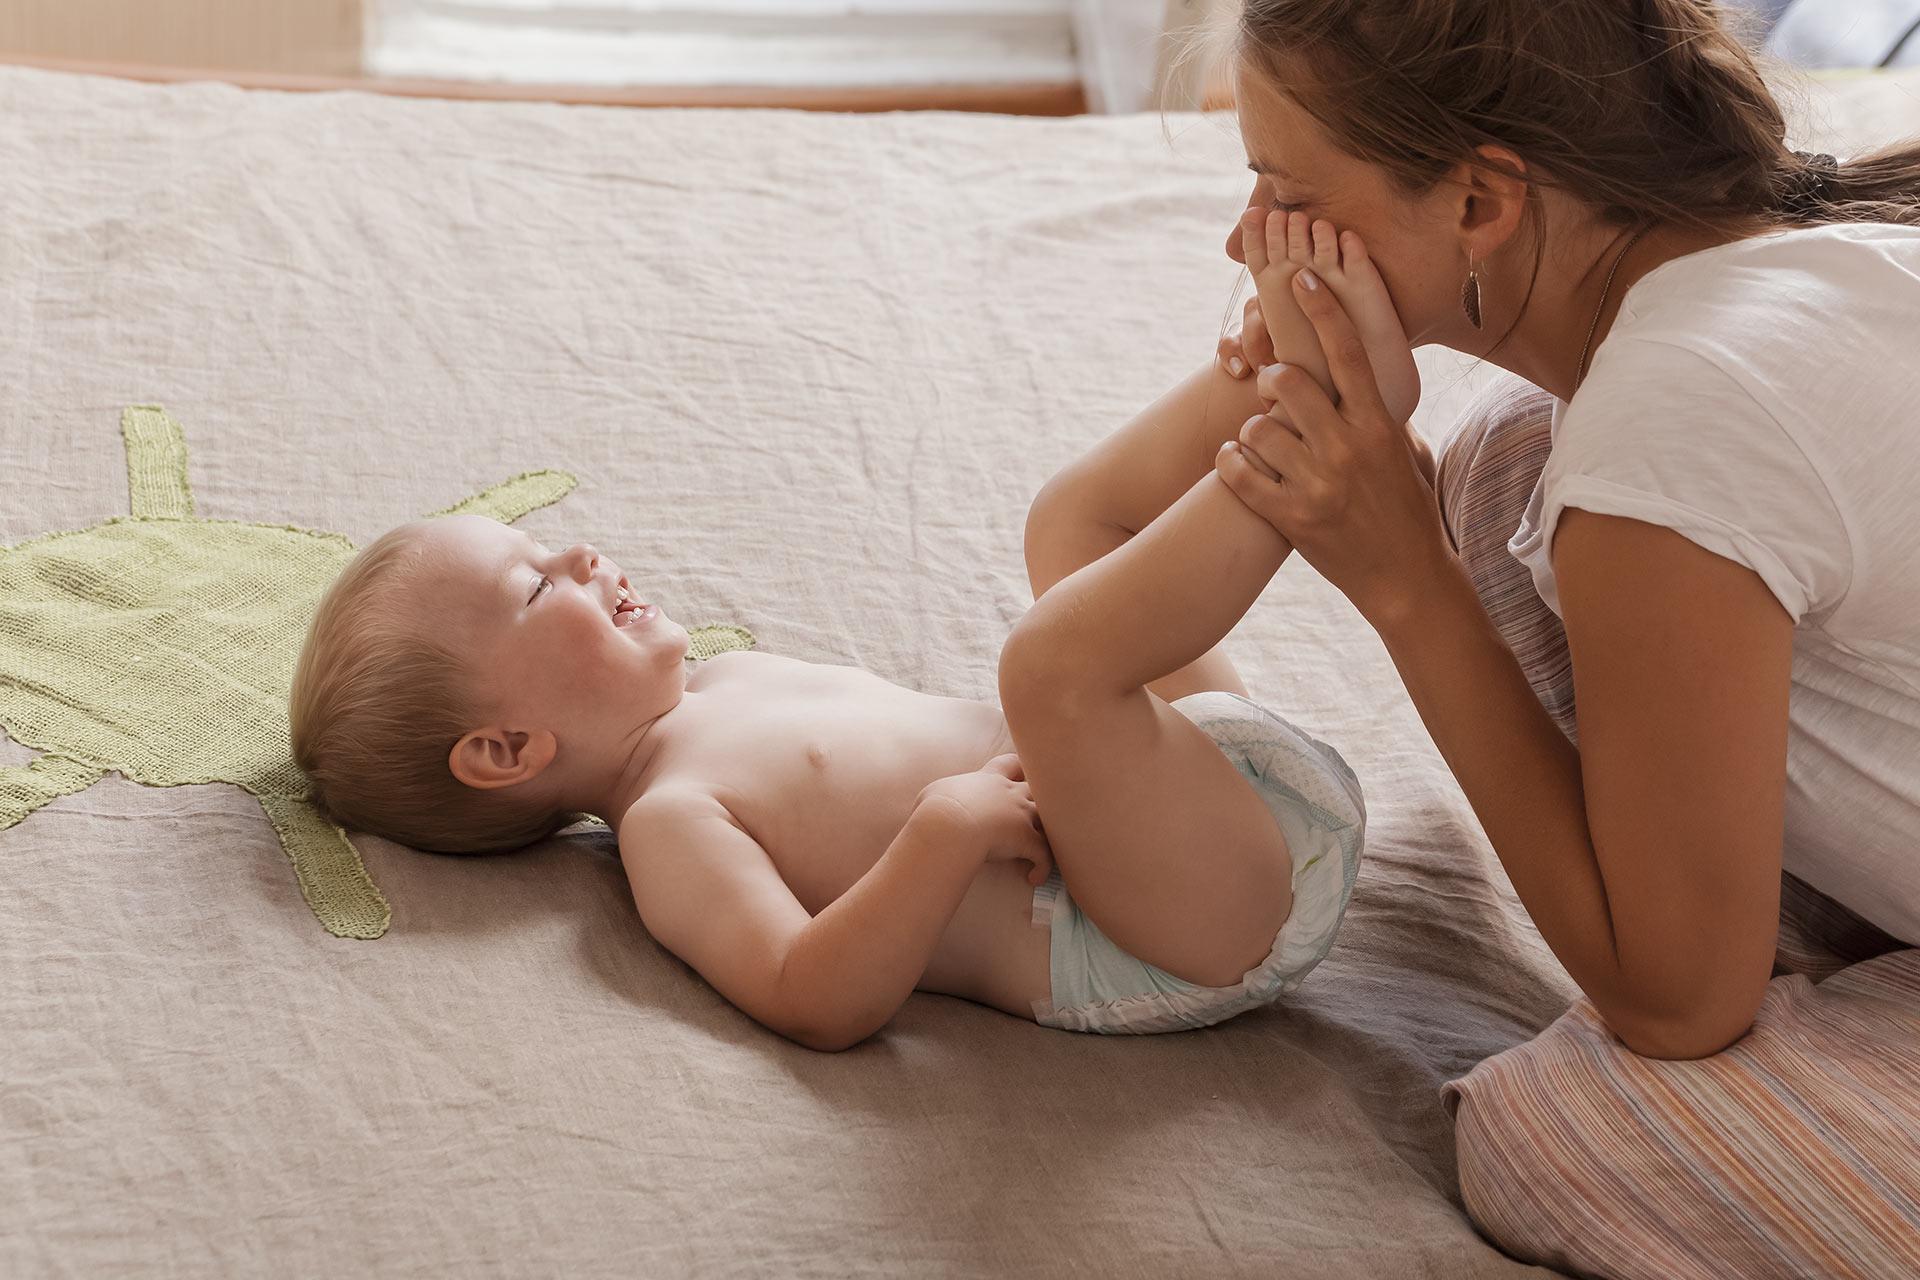 Bebe katkad imaju već oštre nokte kojima sebi mogu nanijeti bolne ogrebotine - Avaz